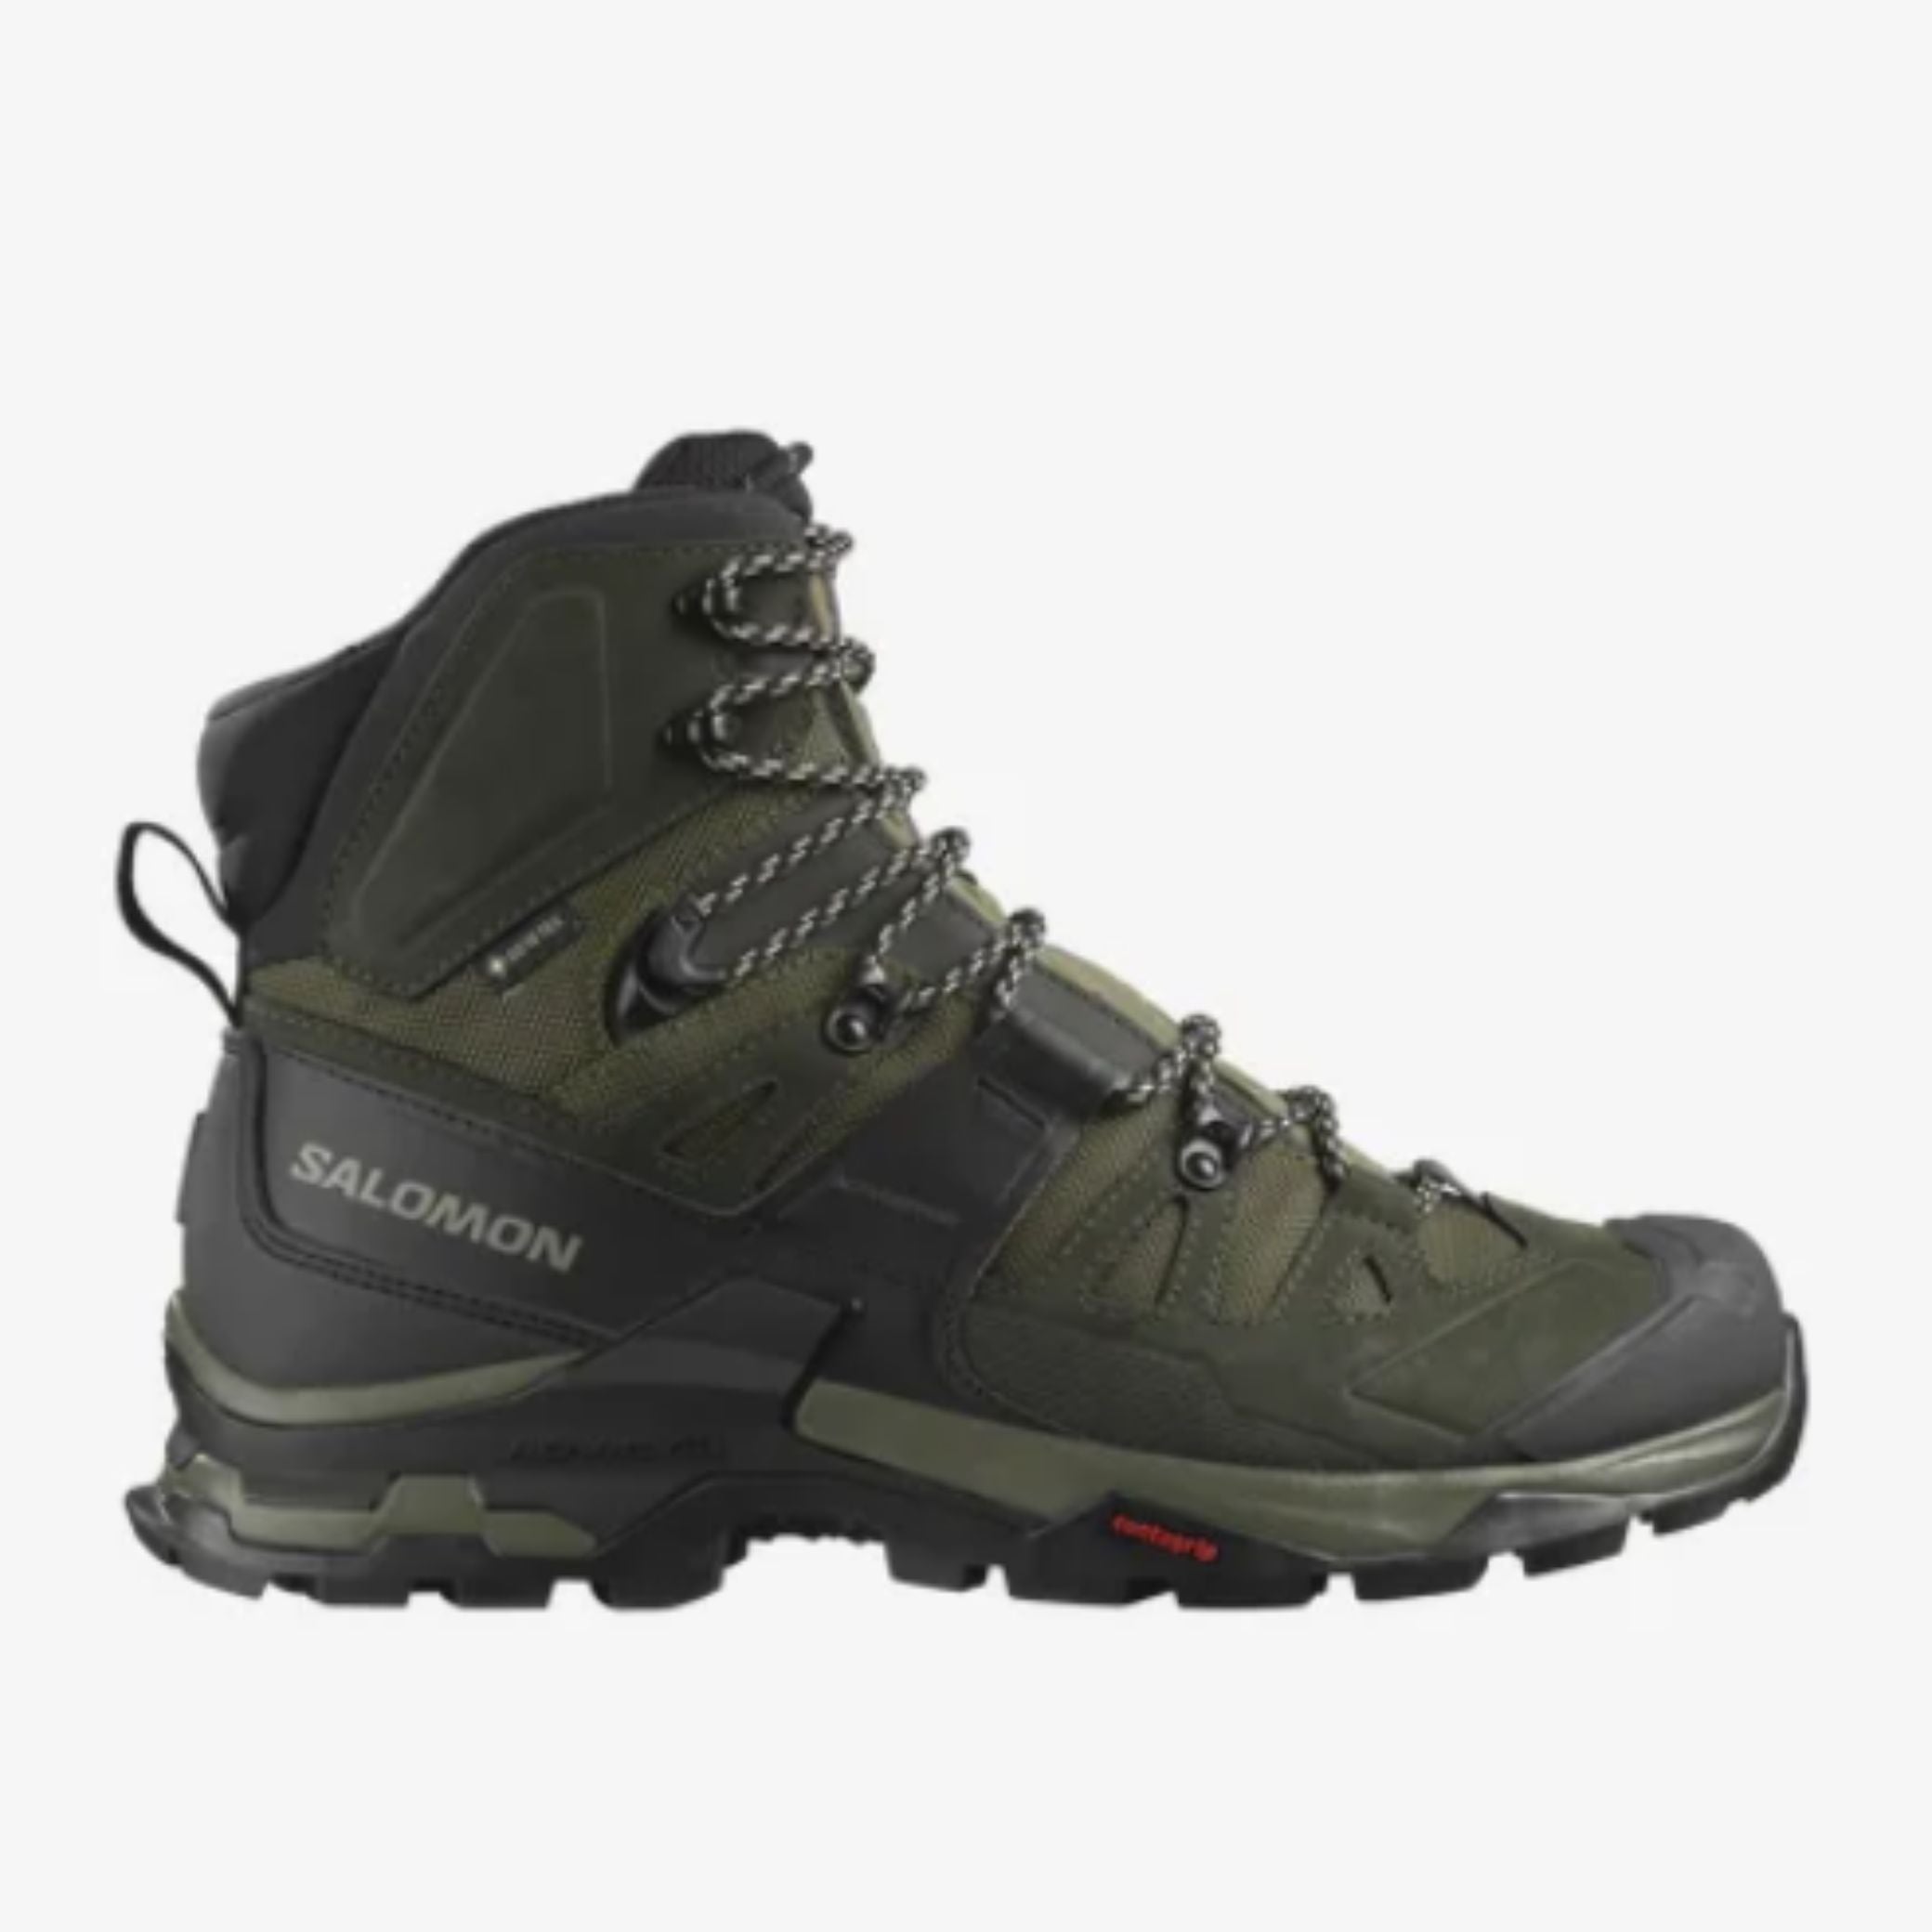 Salomon Quest Men's 4 GTX Hiking Boots | SALOMON | Portwest - The Outdoor Shop